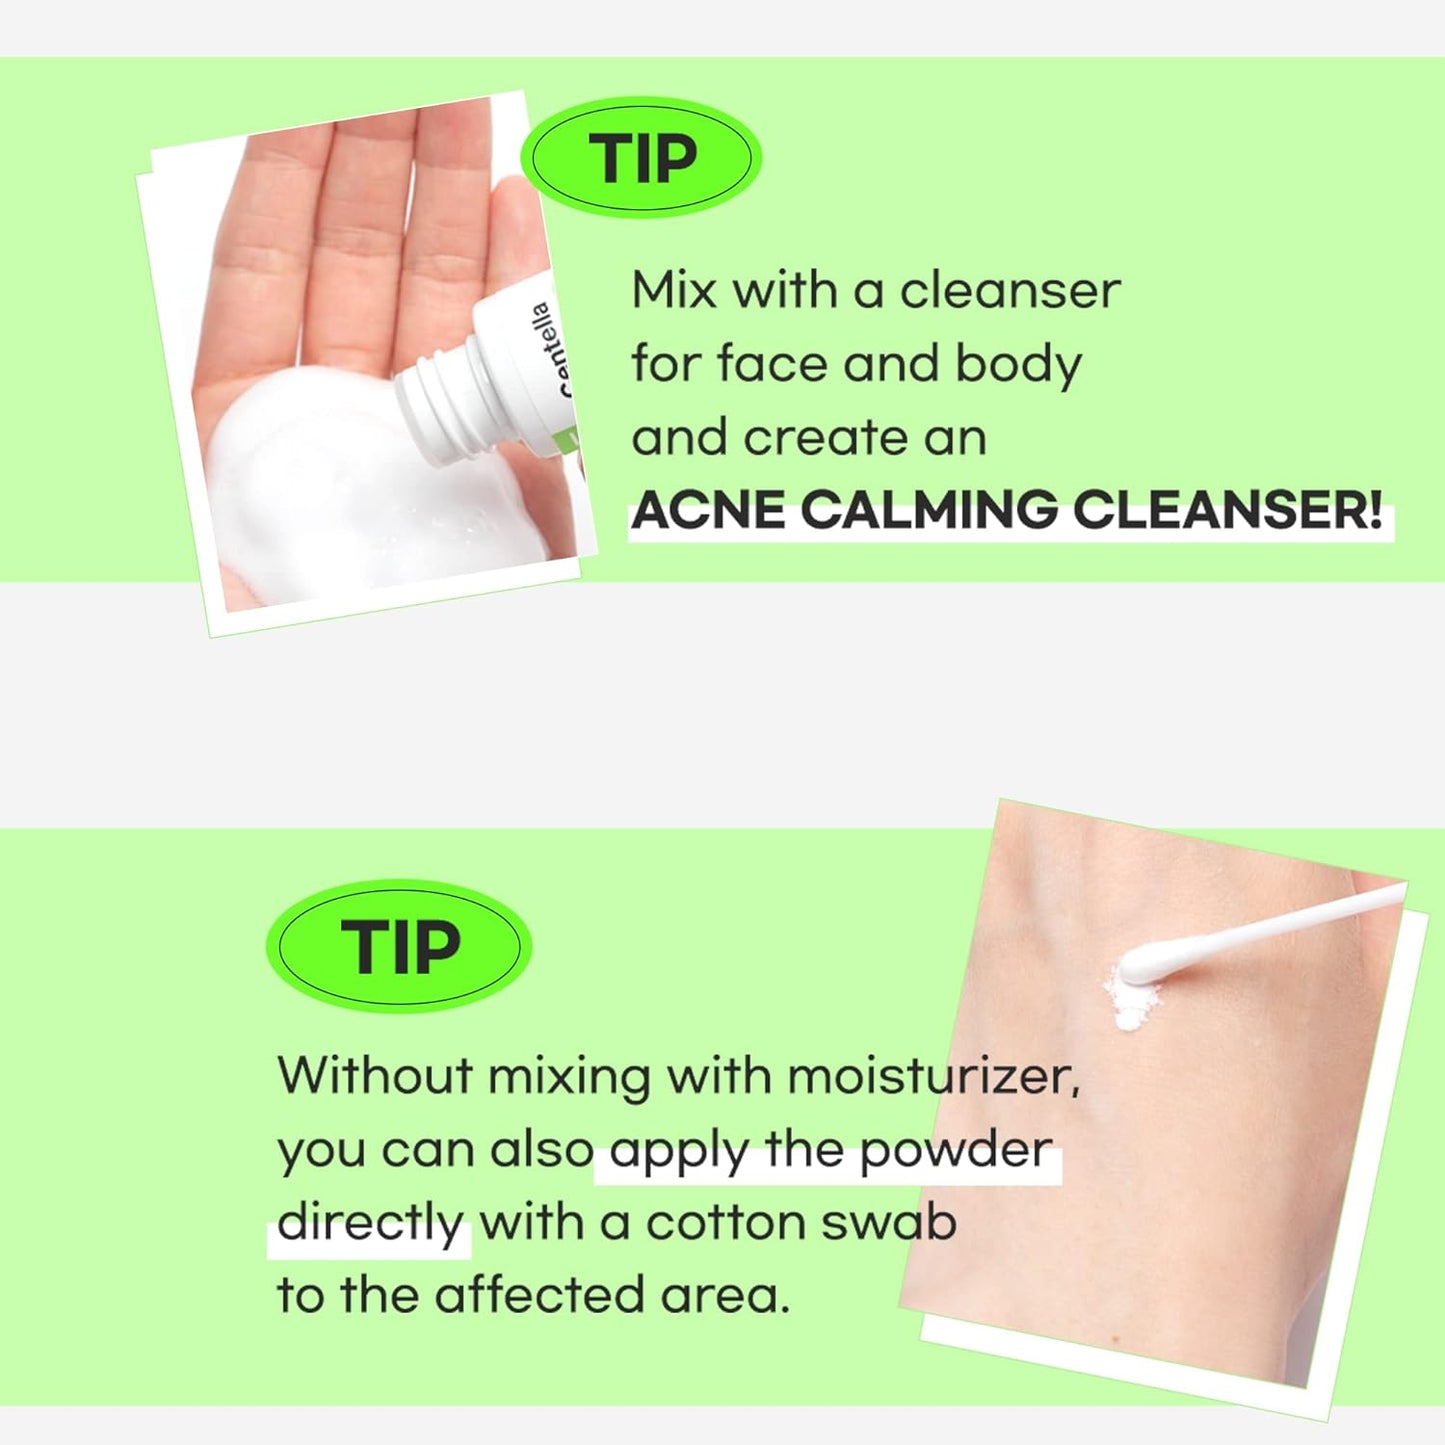 TIAM Centella Blending Powder, CICA Powder, Sebum Control, reduce acne marks, Asiaticoside, Madecassic Acid, Asiatic Acid (10g 0.35 Oz)